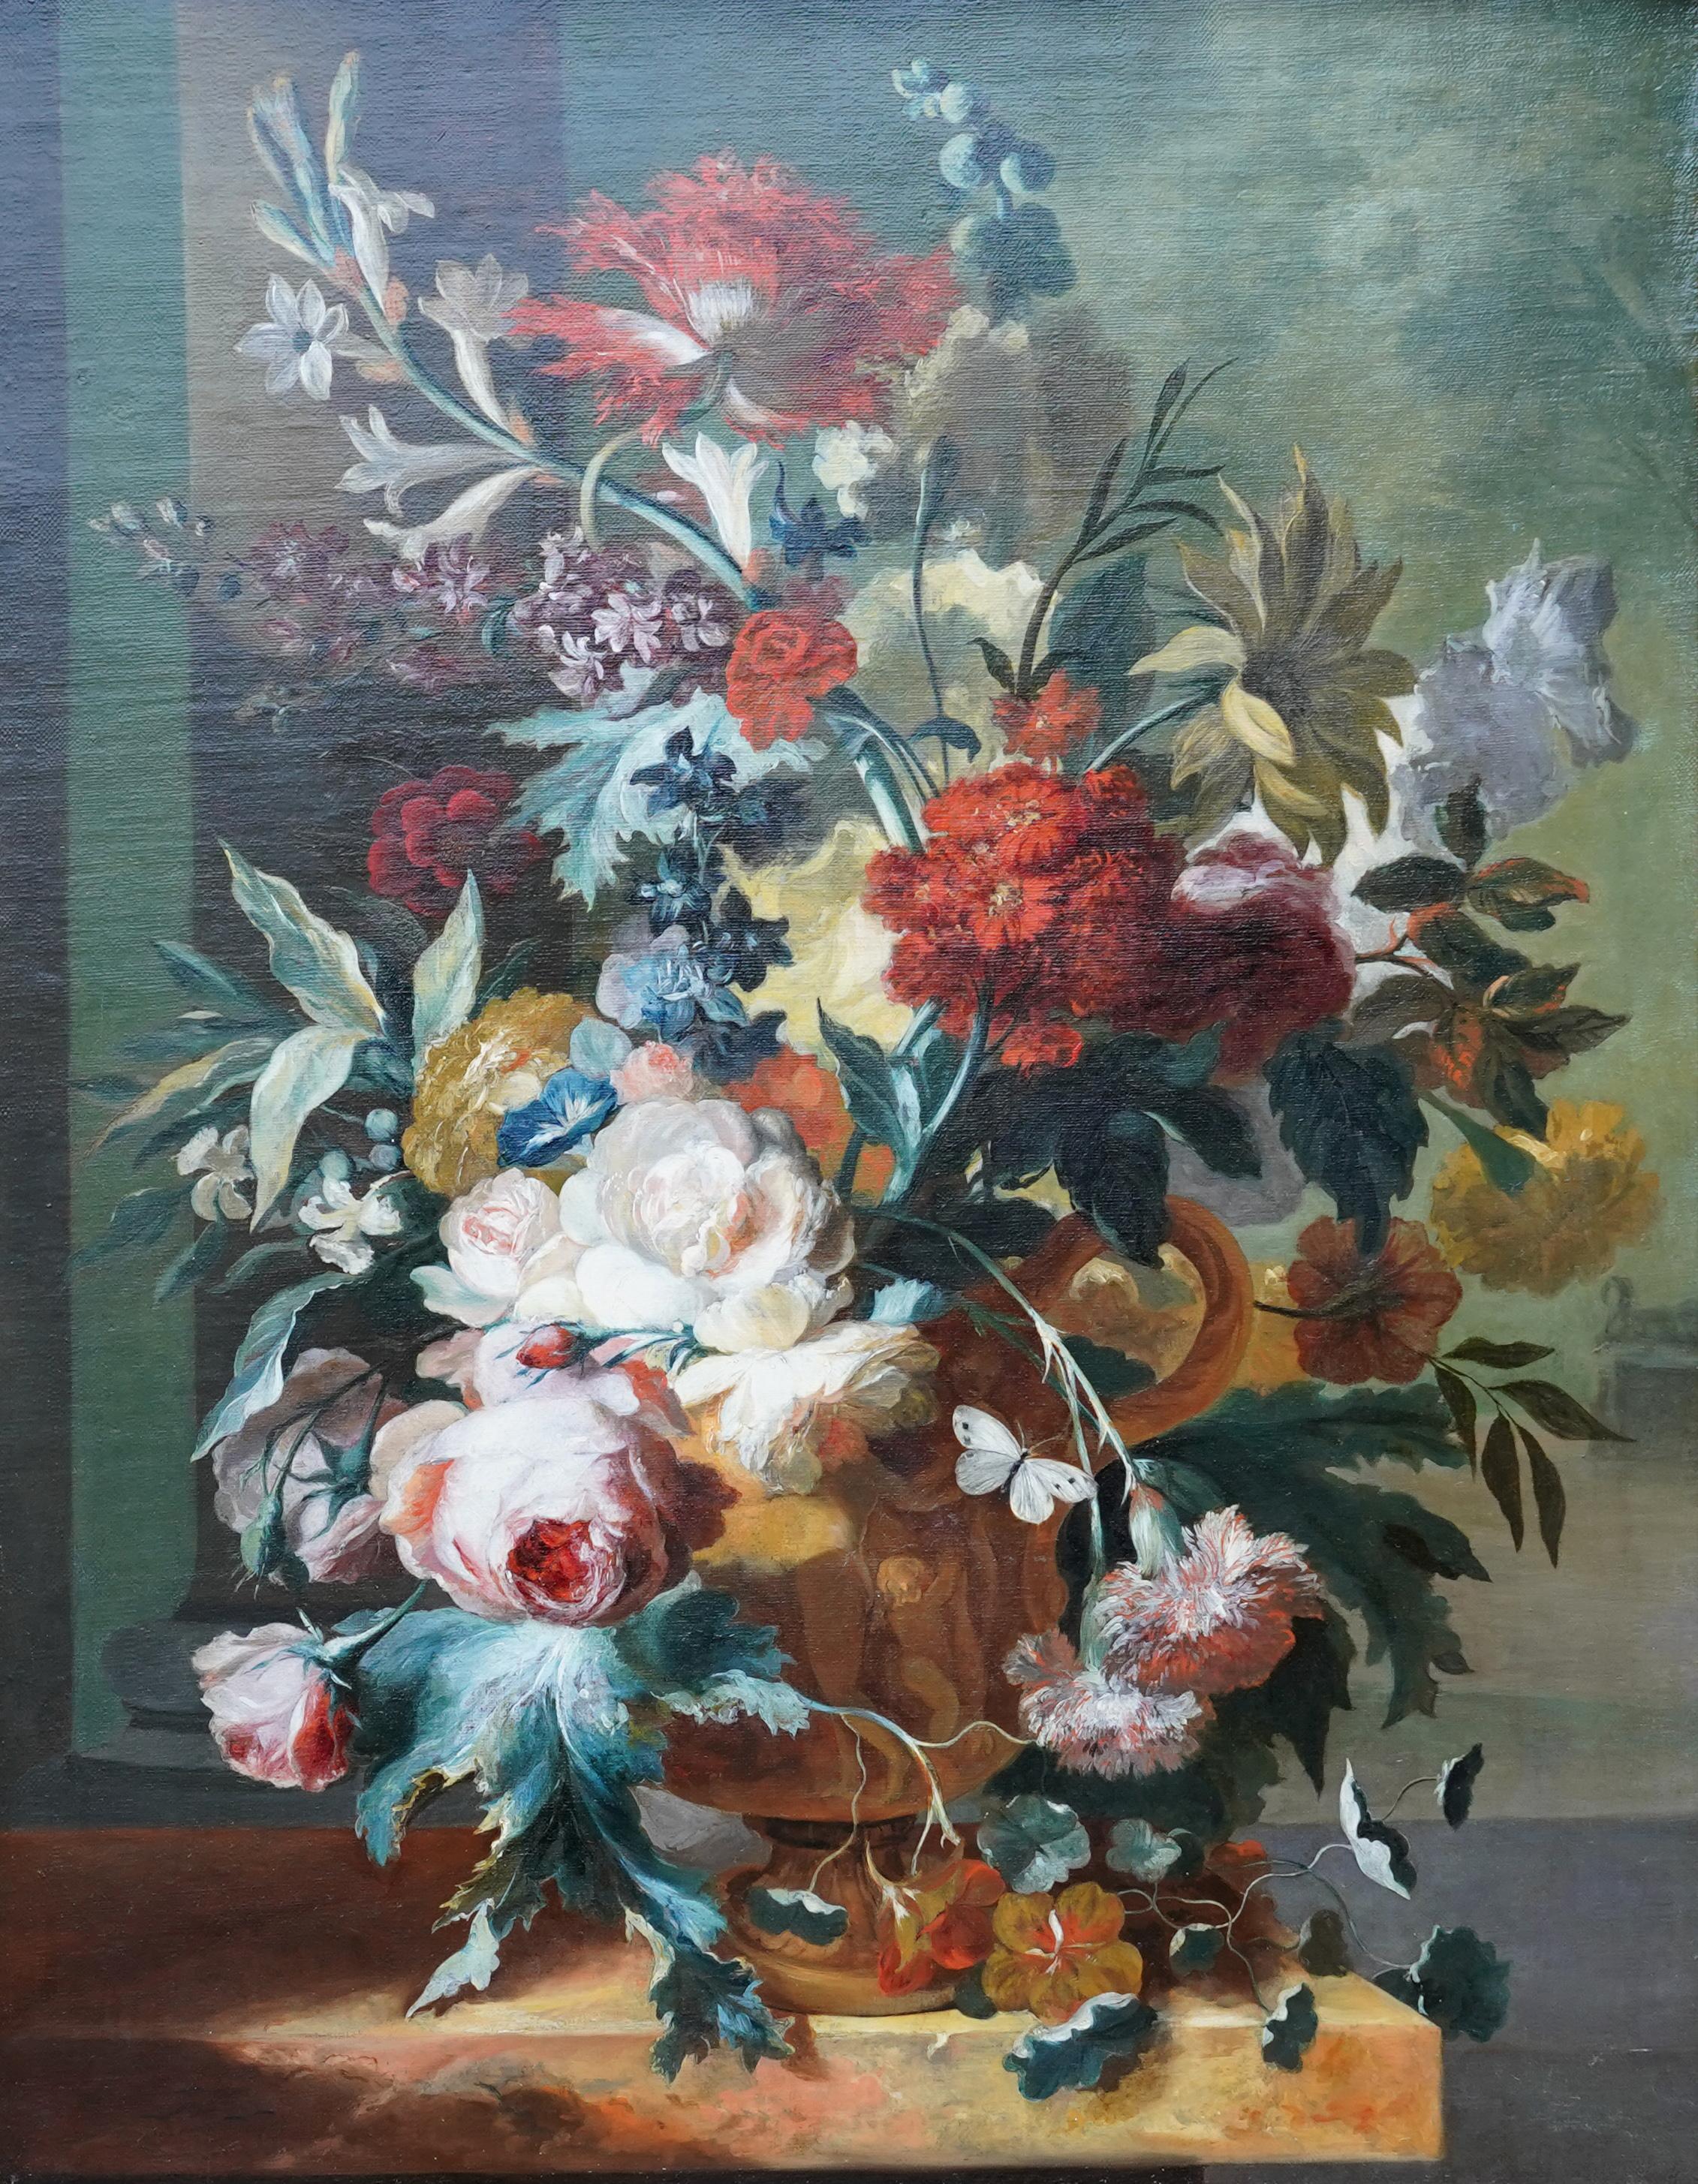 Blumen in Vase auf Ledge – niederländisches Blumenstillleben eines alten Meisters, Ölgemälde, 18. Jahrhundert – Painting von Margaretha Haverman